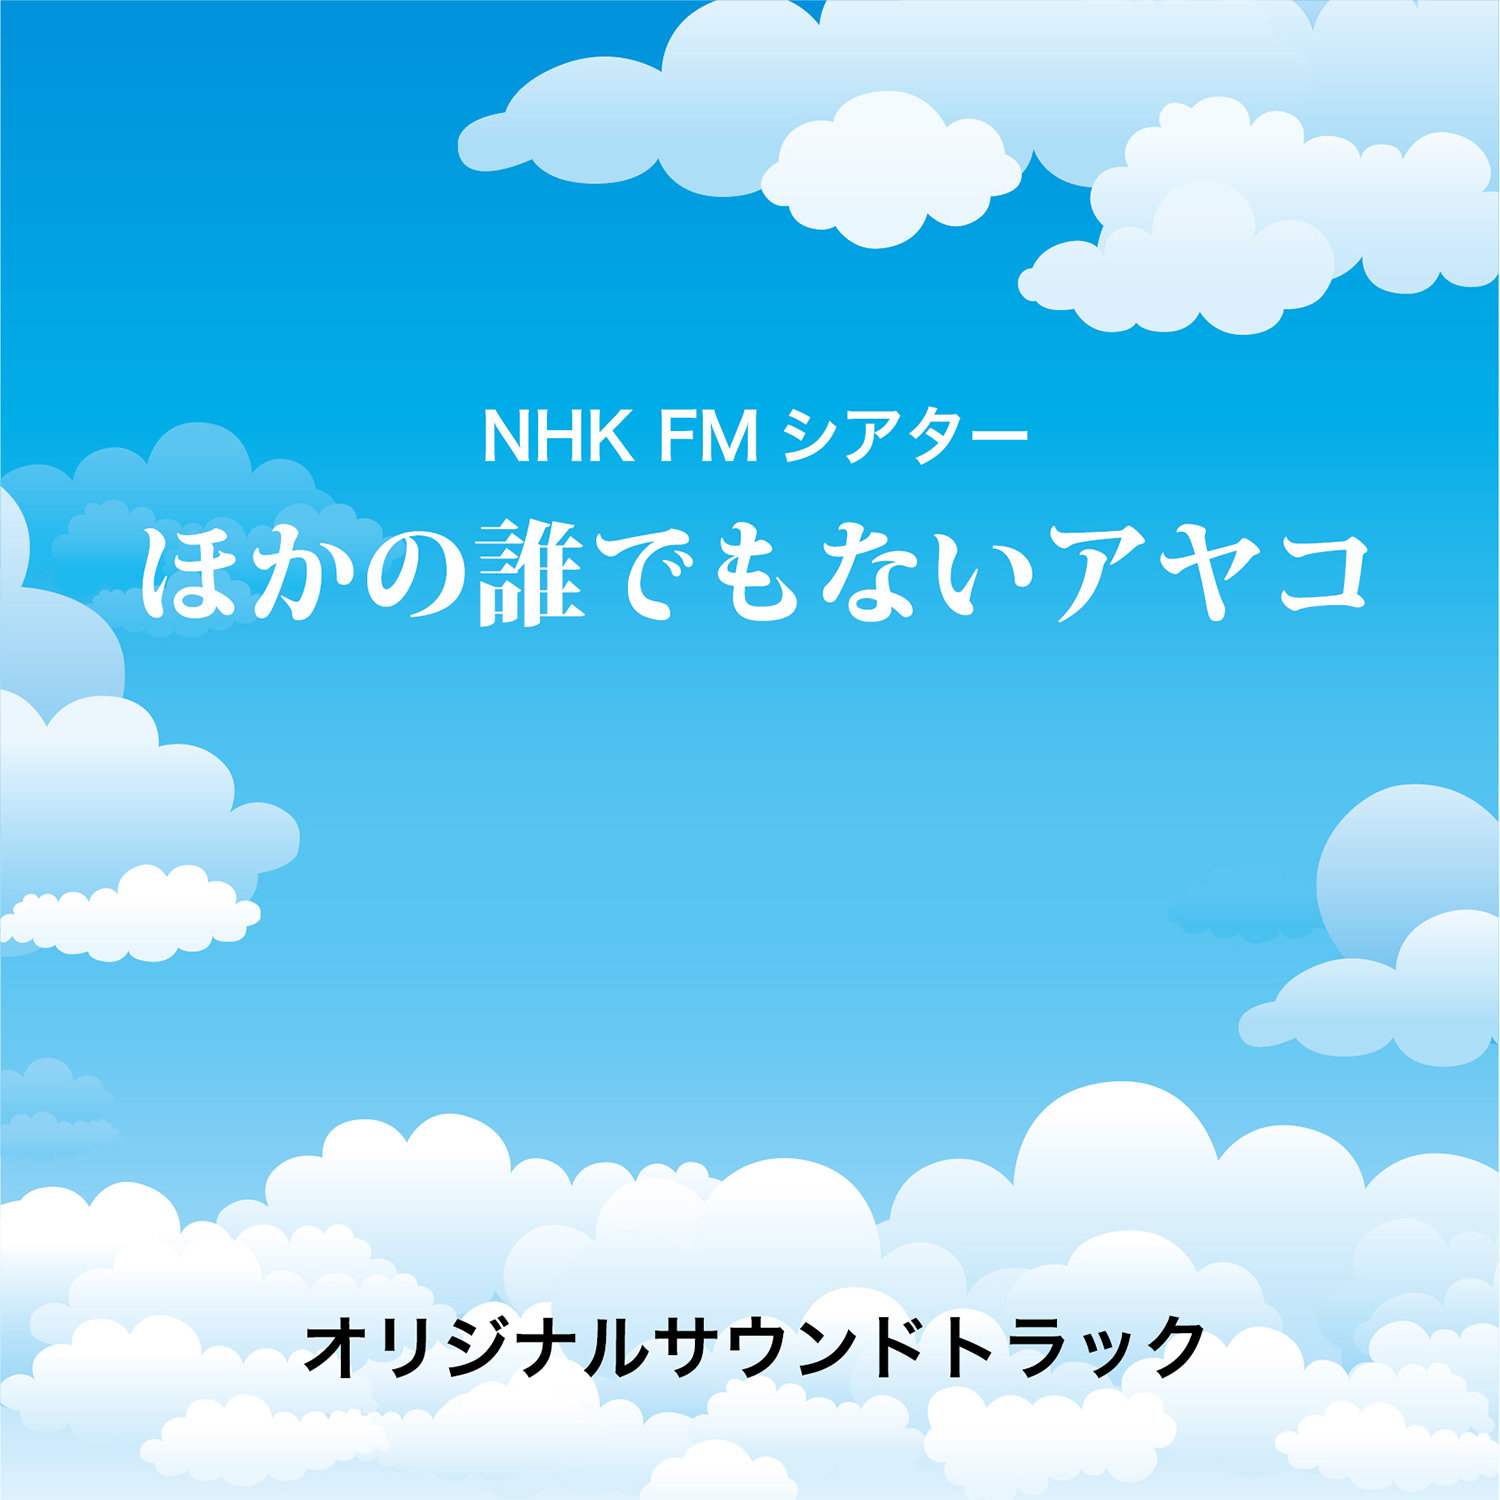 NHK FMシアター「ほかの誰でもないアヤコ」オリジナルサウンドトラック						Популярное